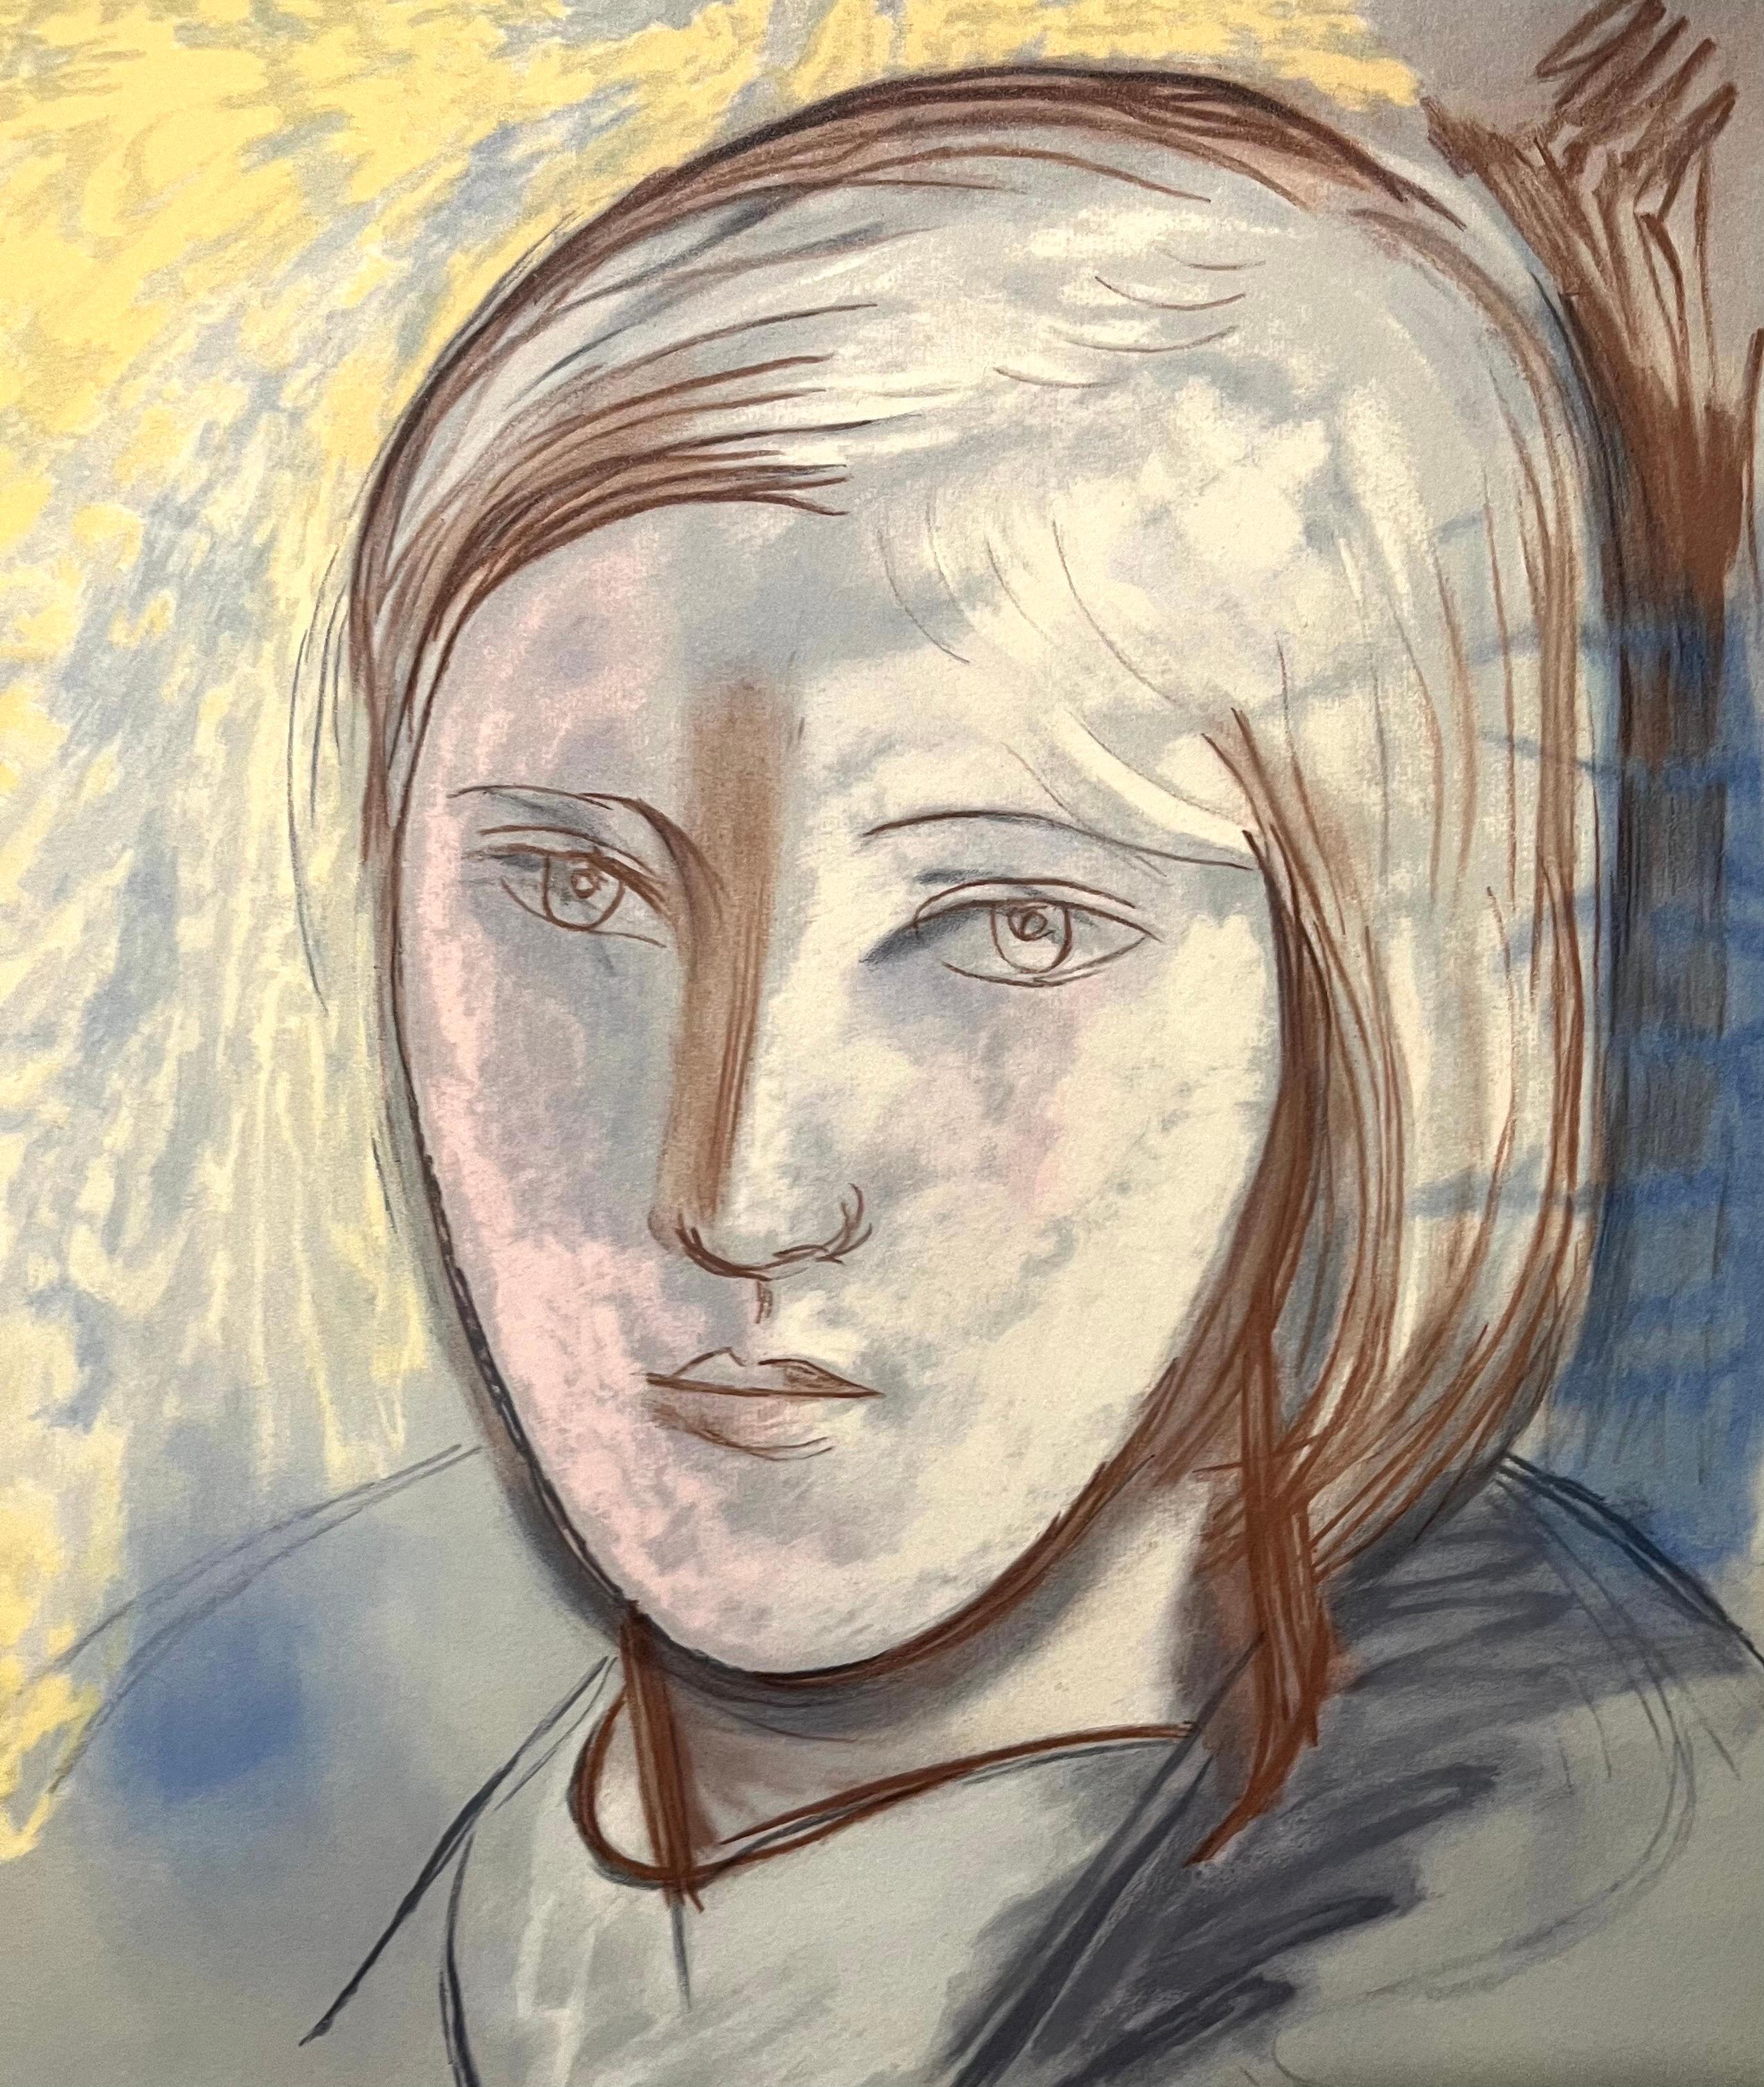 Pablo Picasso Estate Lithographie fauve signée de la main Portrait de femme Marie Therese - Print de (after) Pablo Picasso